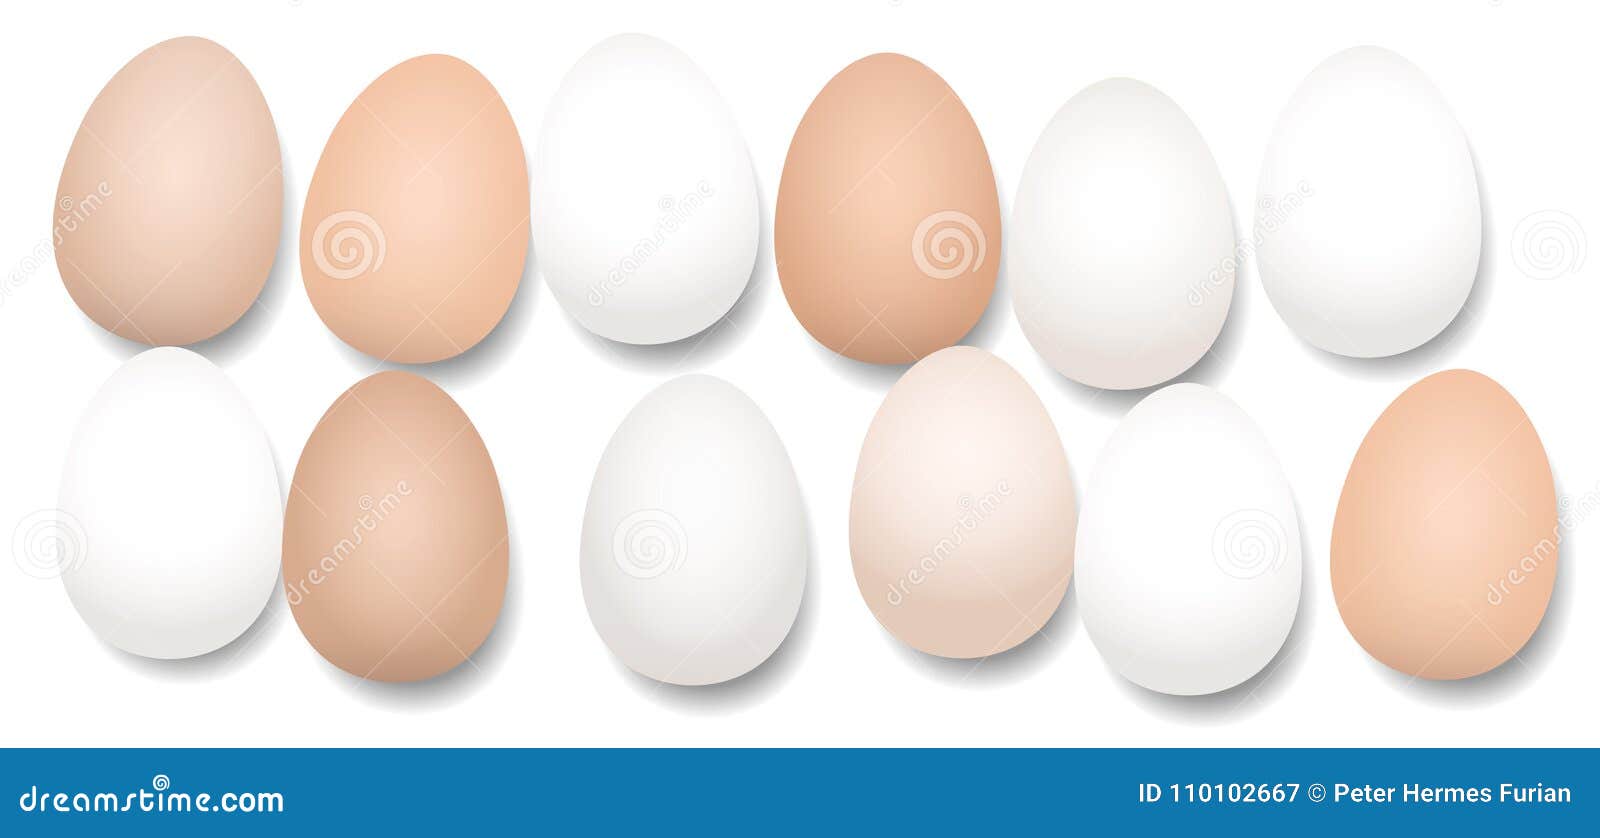 Dutzend Eier Zwolf Stucke Vektor Abbildung Illustration Von Eier